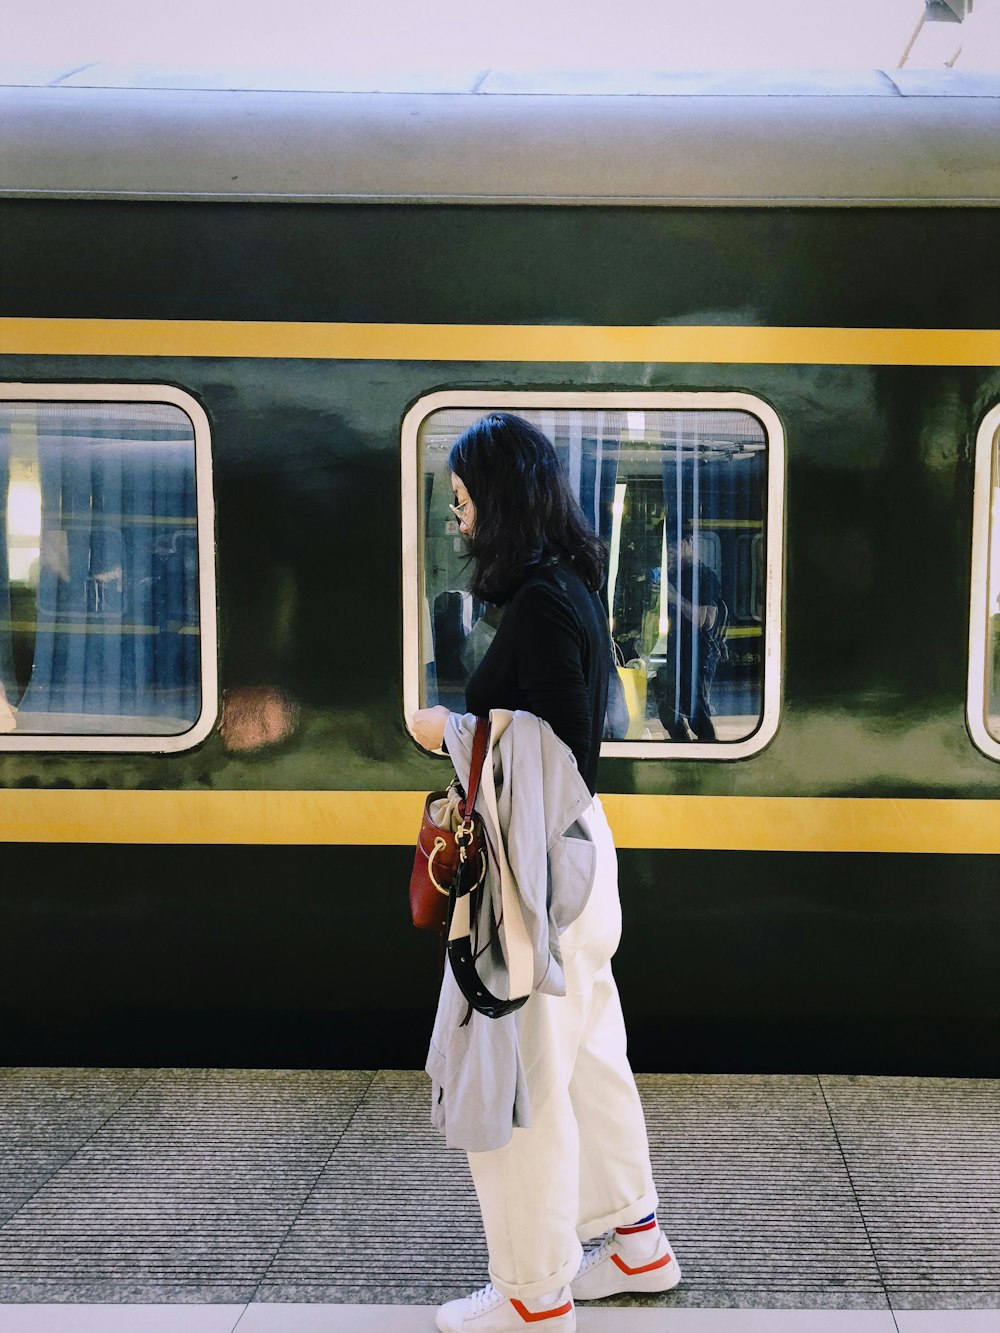 電車のそばで赤いバッグを持って立っている女性